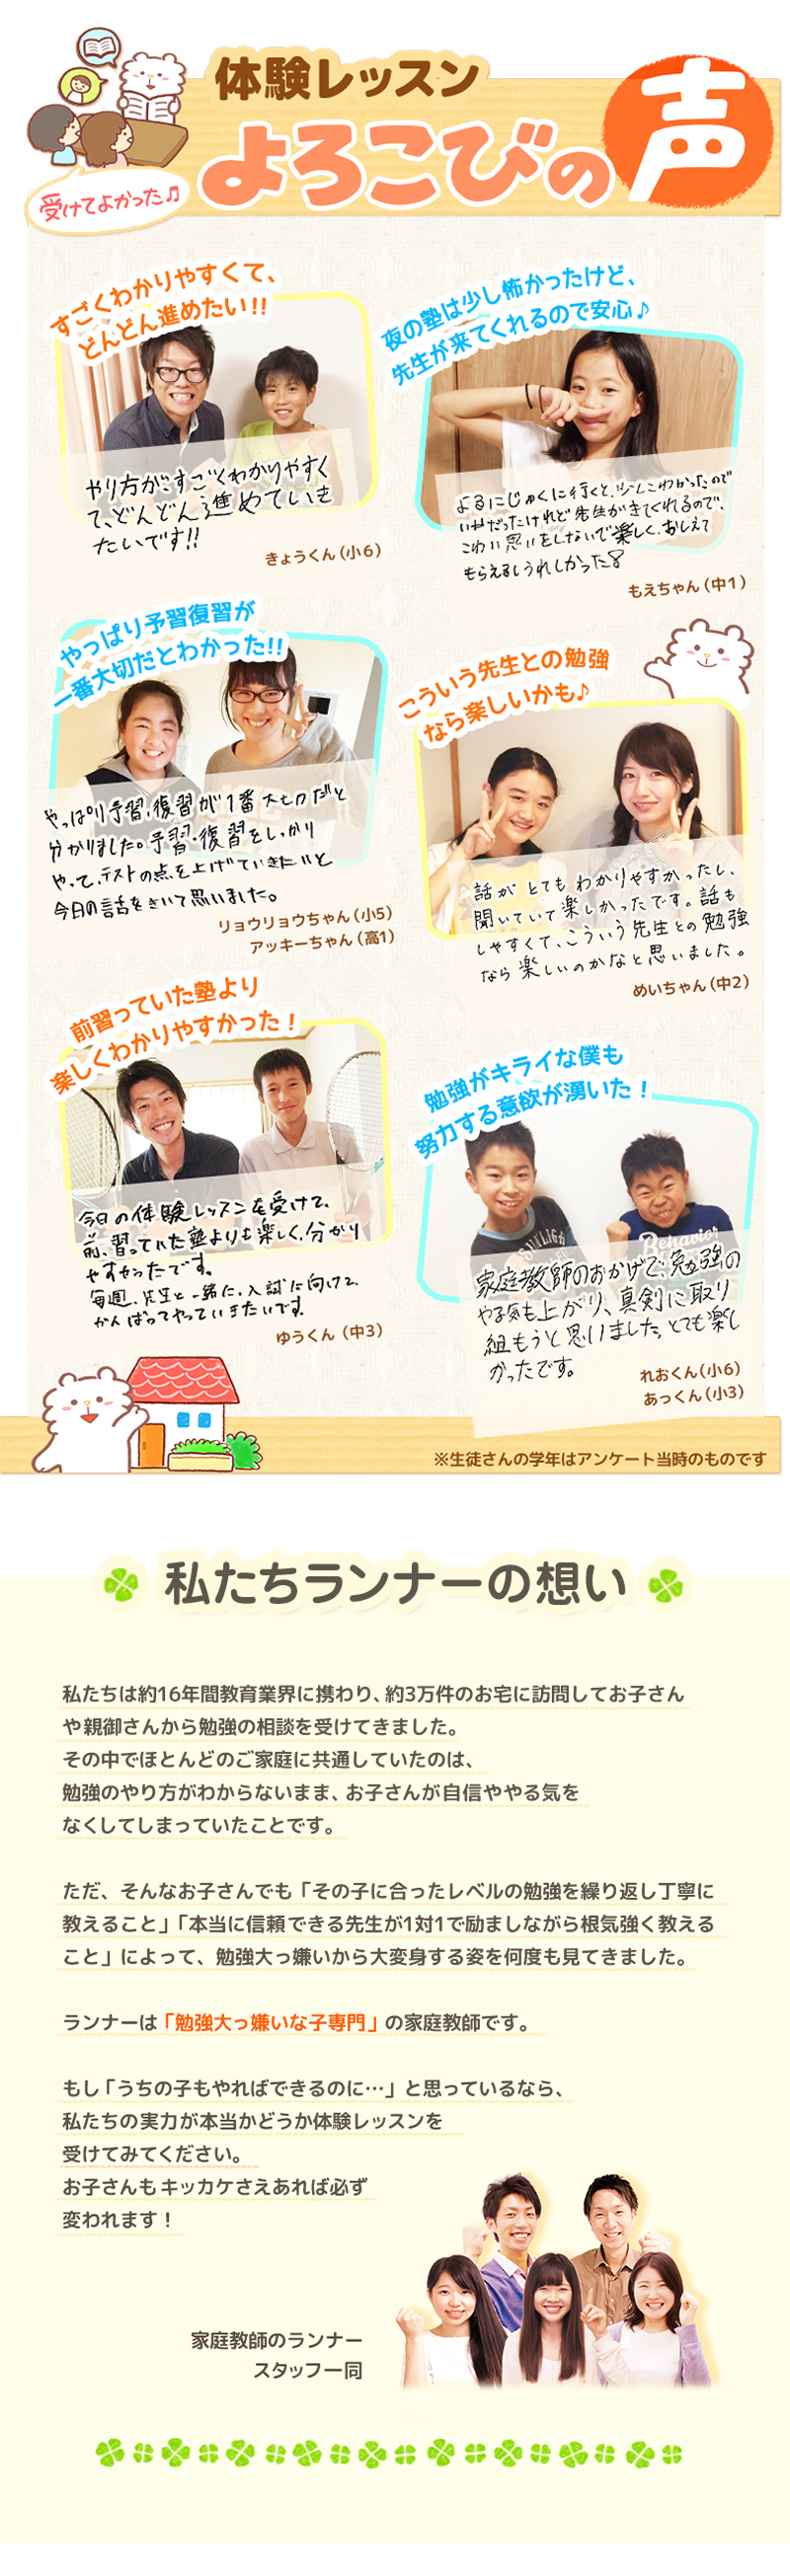 【家庭教師-埼玉県-幸手市のお客様のページ】【画像が表示されない場合はページ下部に画像と同じ内容をテキストで掲載していますのでそちらをご覧ください。】